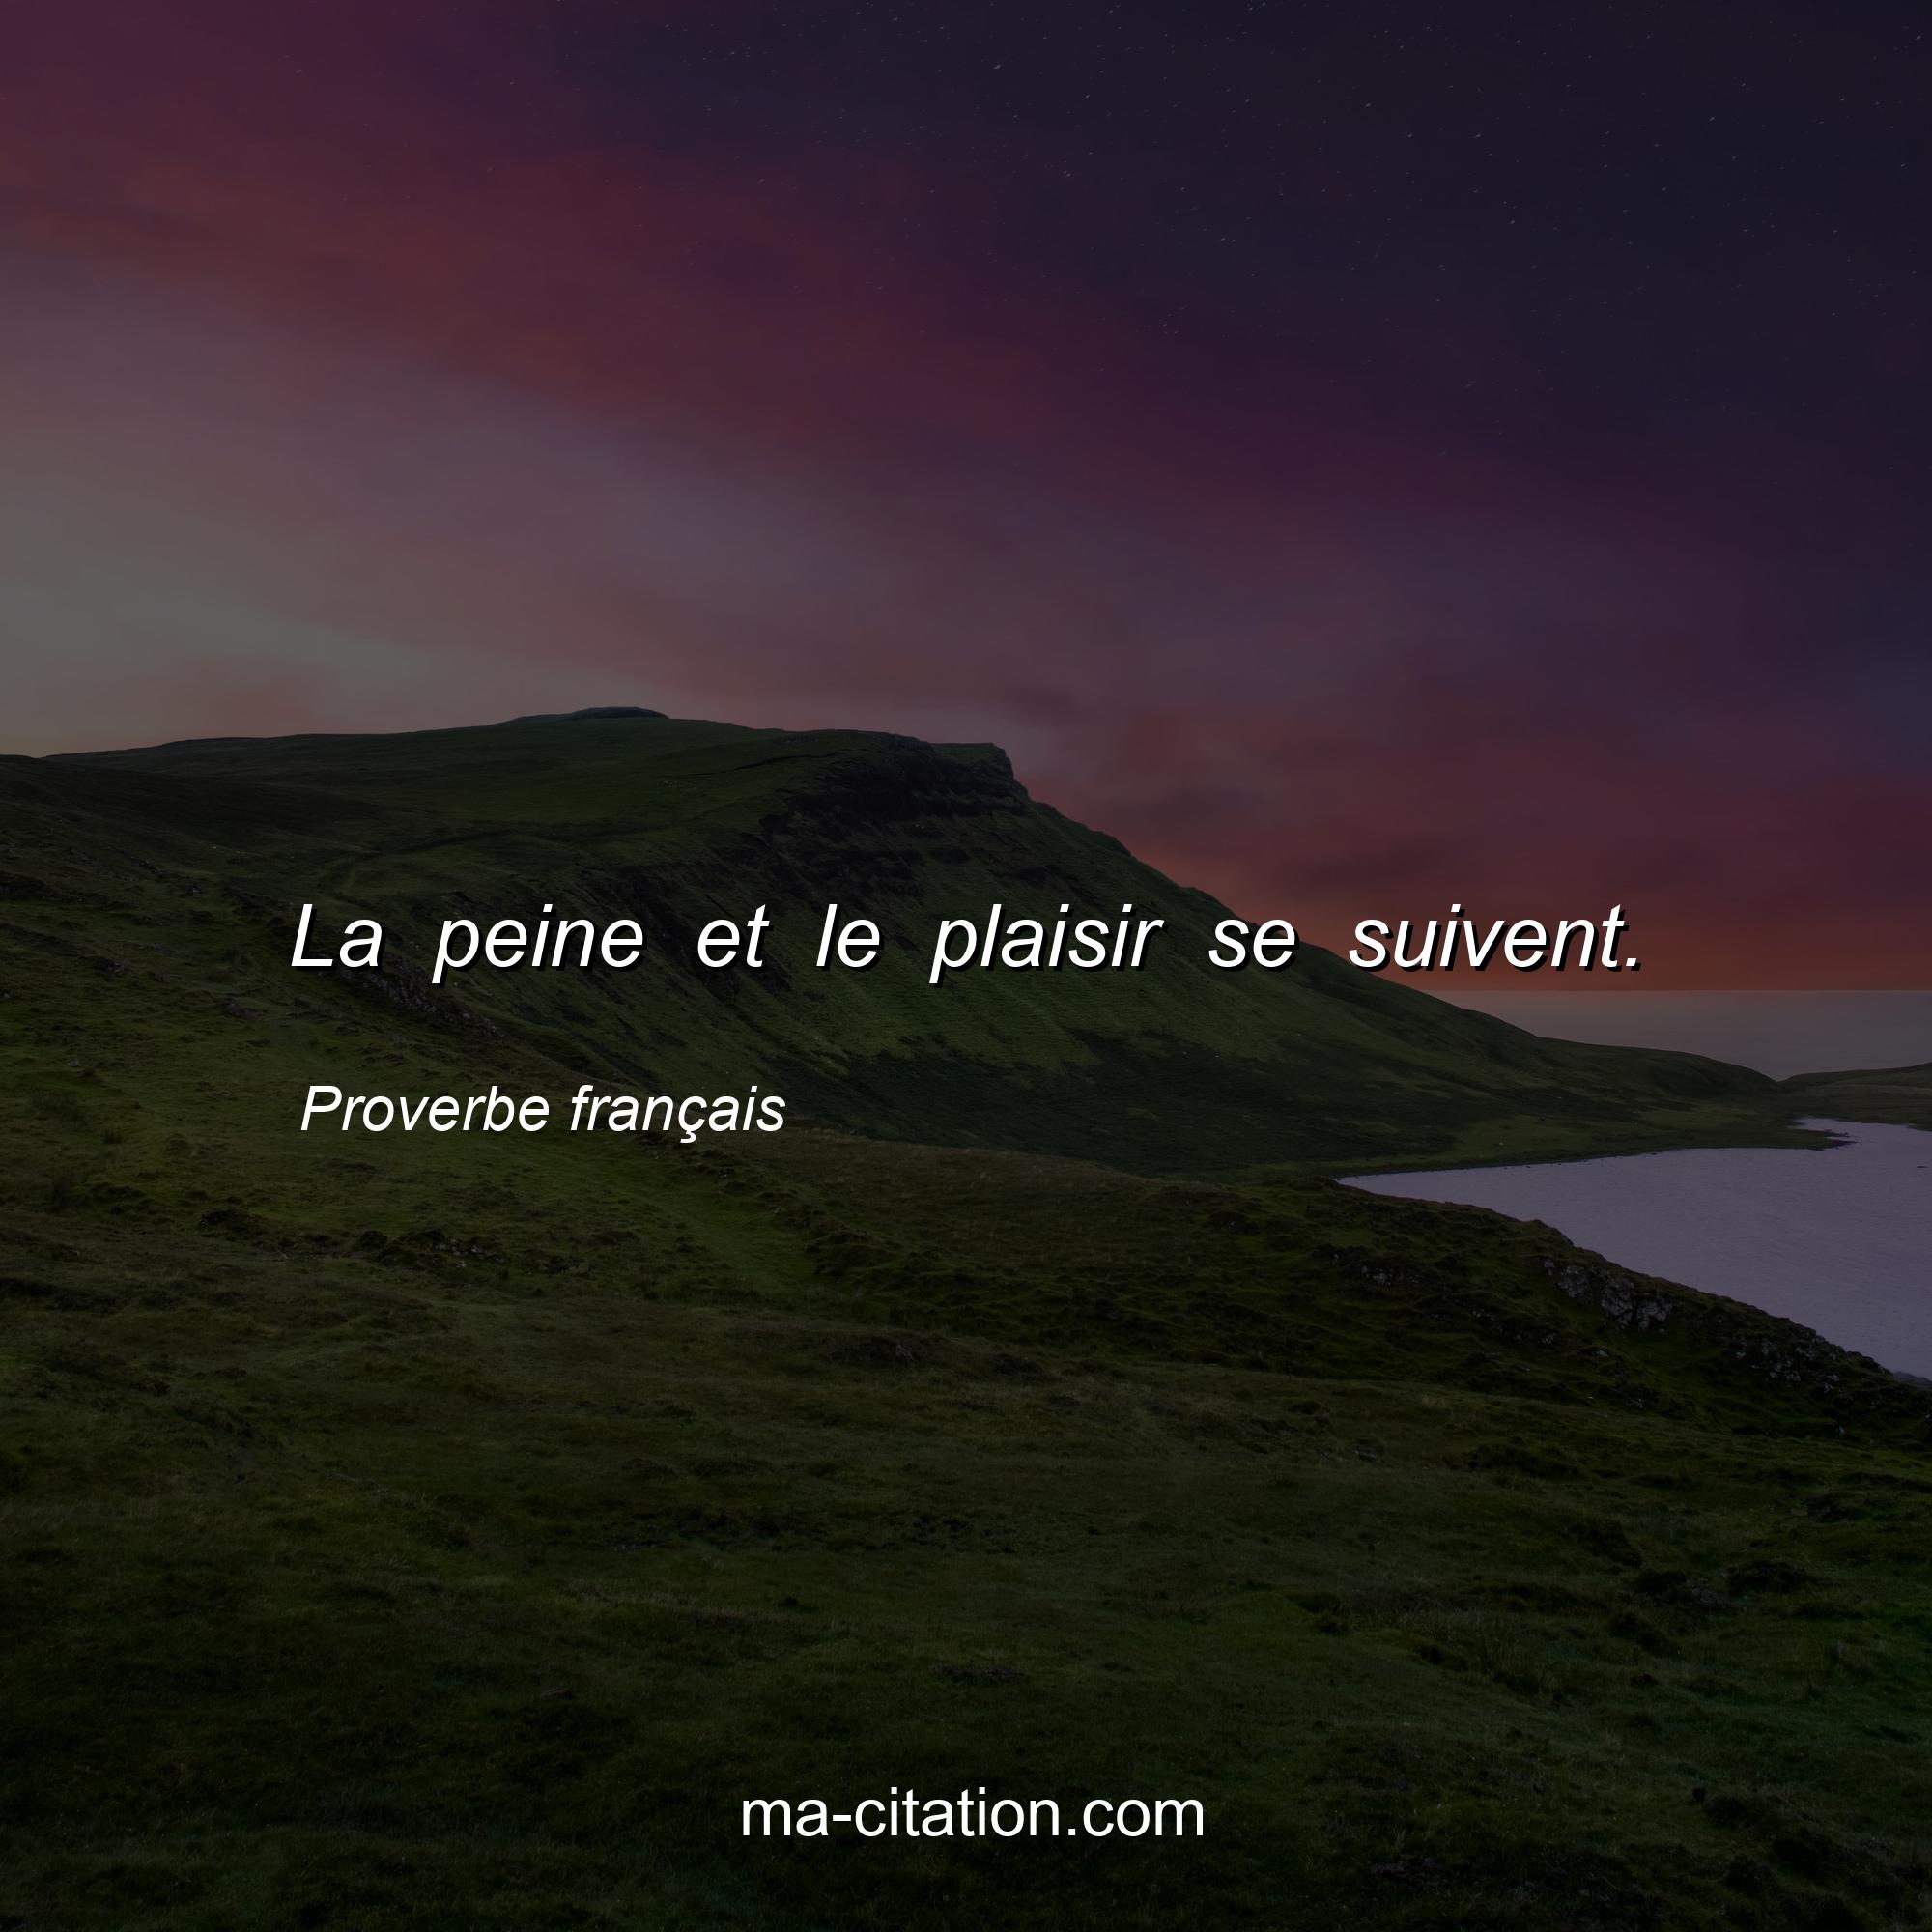 Proverbe français : La peine et le plaisir se suivent.